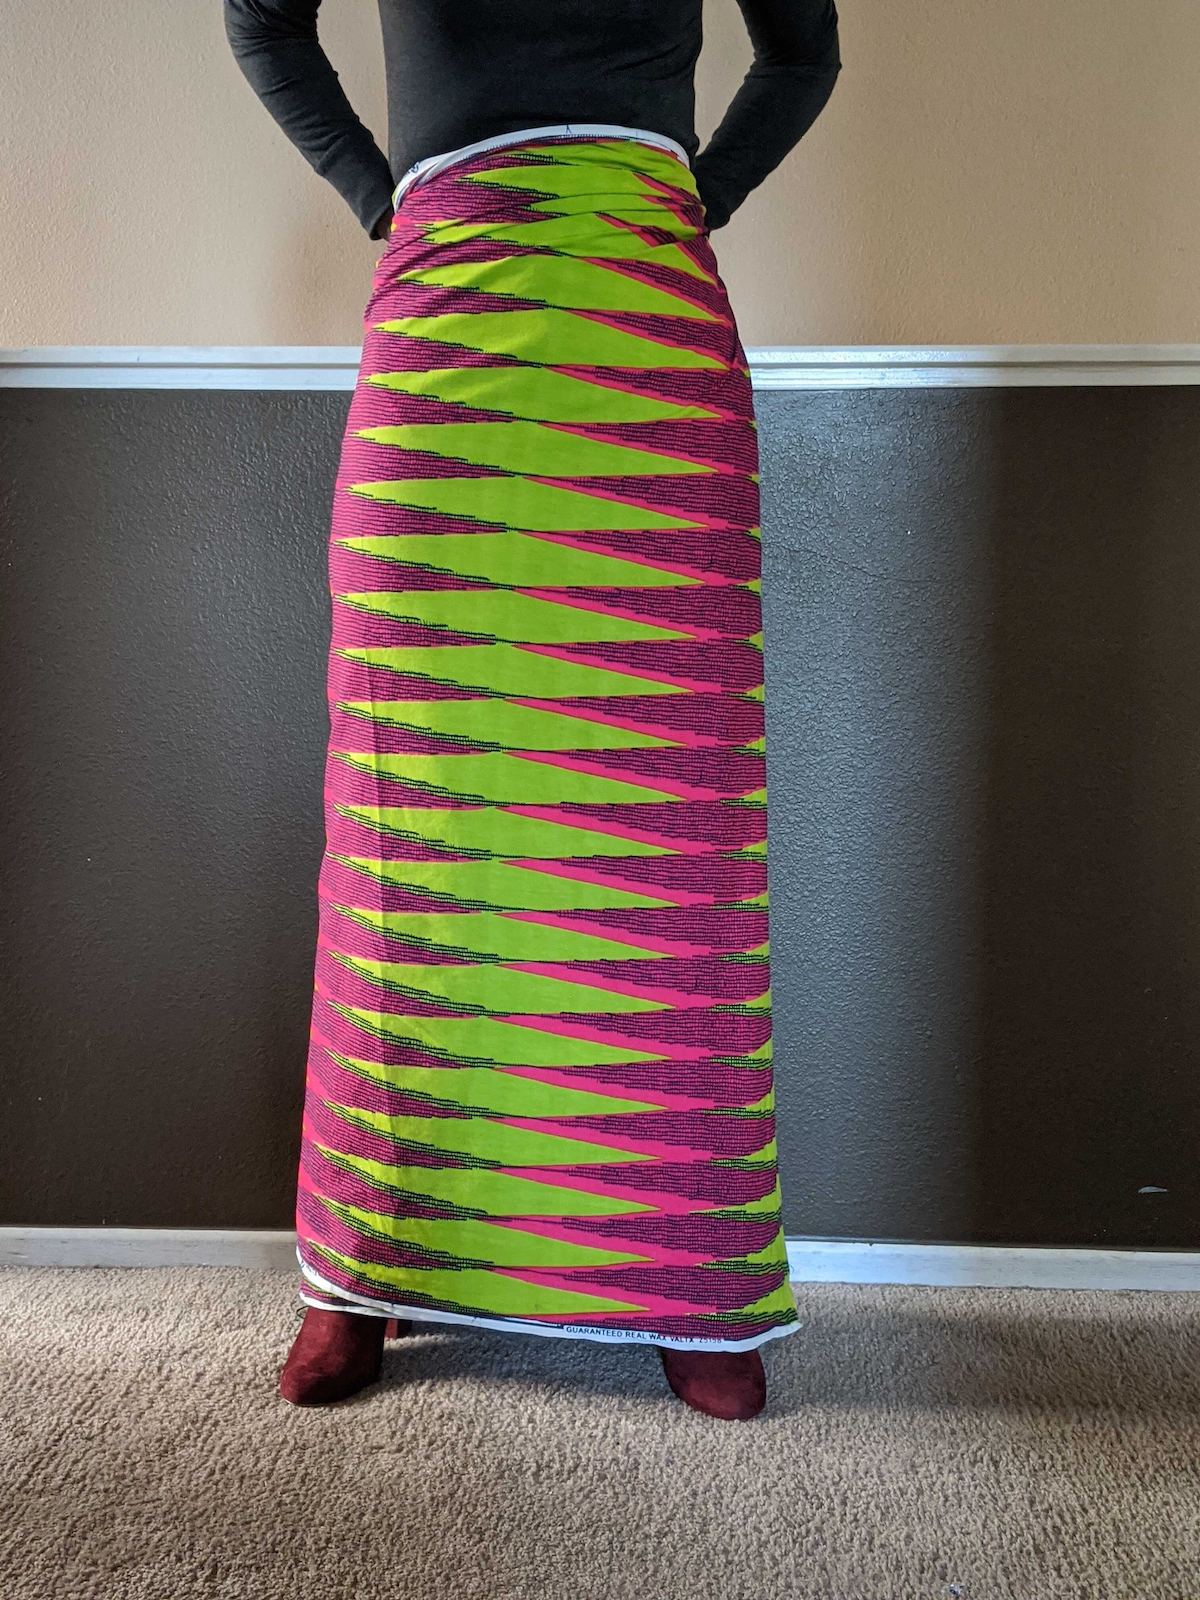 Fotografía de una tela colorida envuelta alrededor de la cintura de una persona.